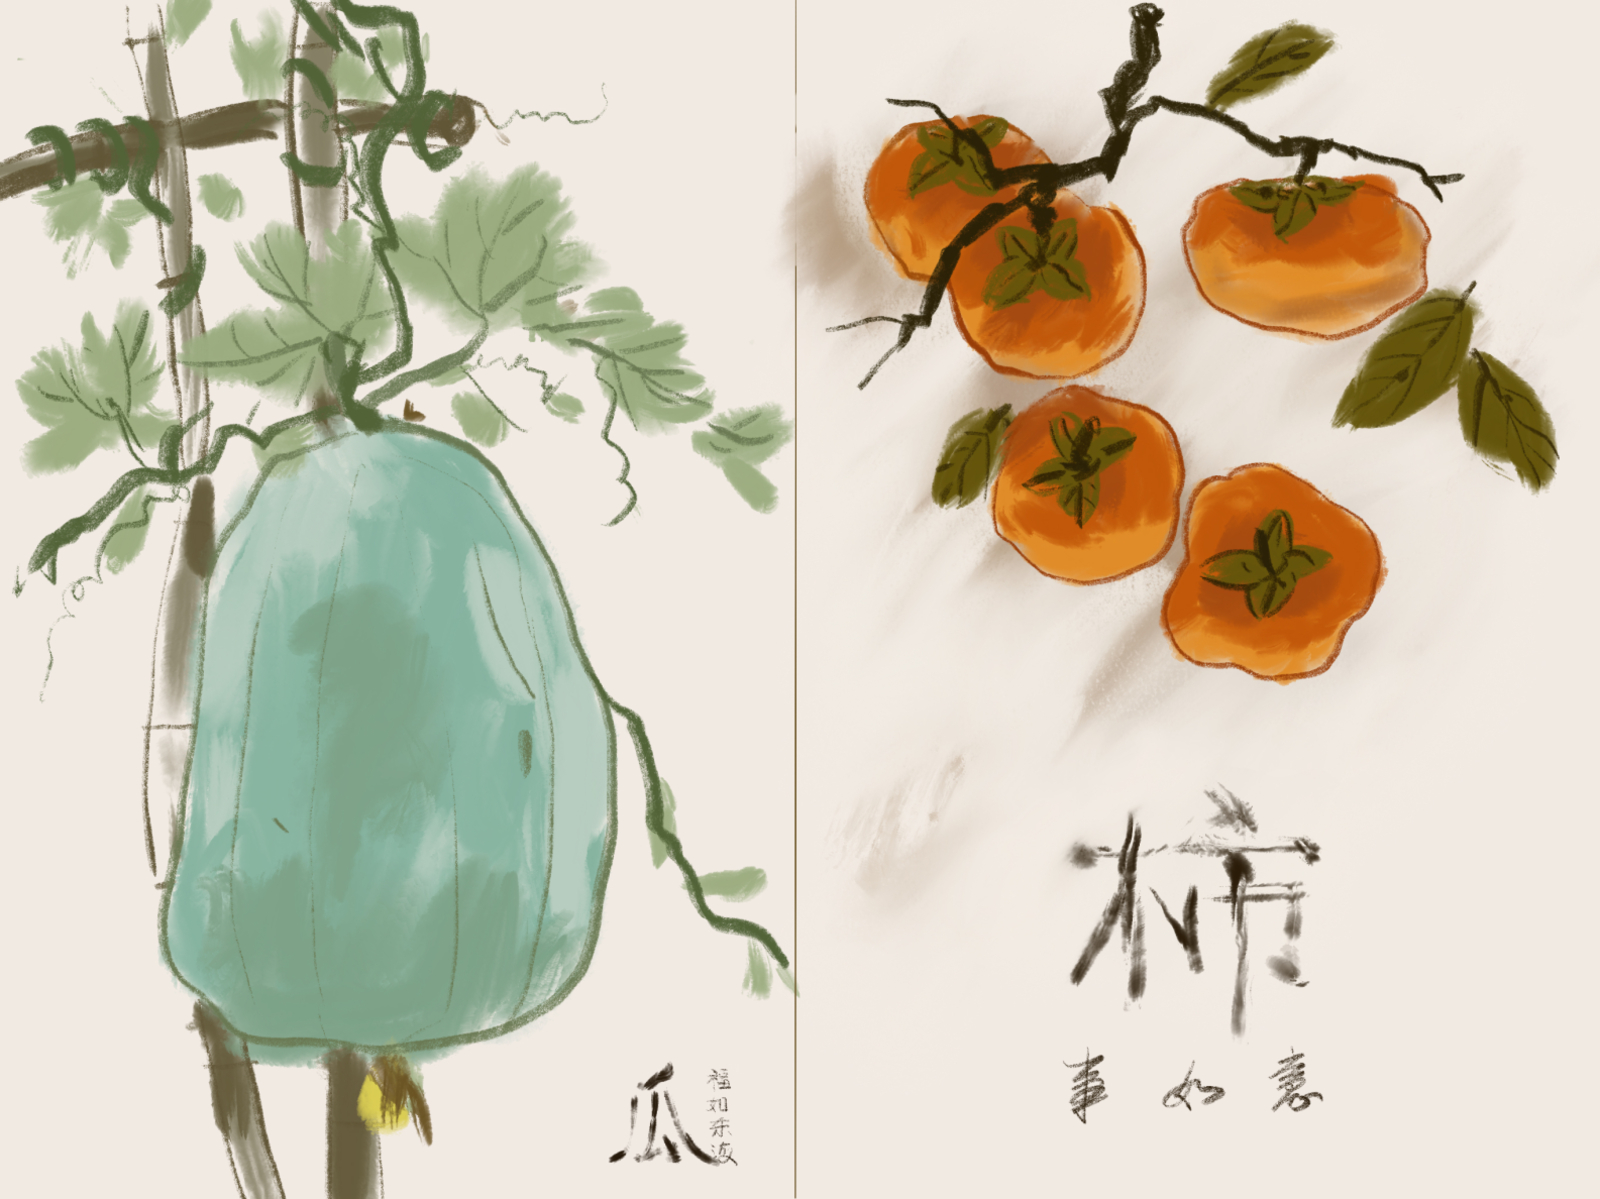 水墨風 illustration 中國新年 冬瓜， 吉祥物 柿子 水墨